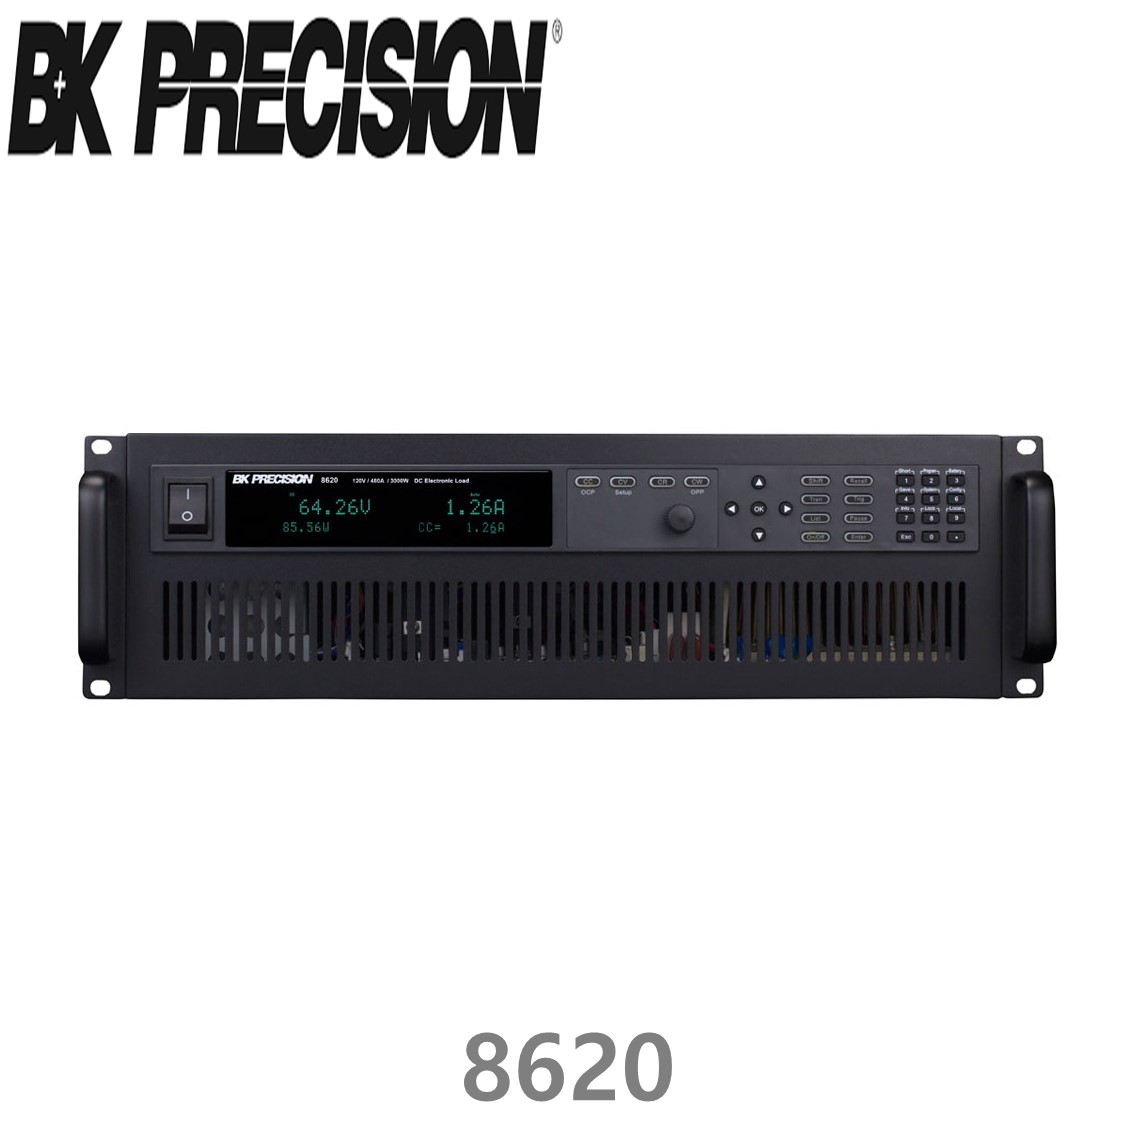 [ BK PRECISION ] BK 8620, 120V/480A(3000W), DC Electronic Load, DC전자부하기, B&K 8620